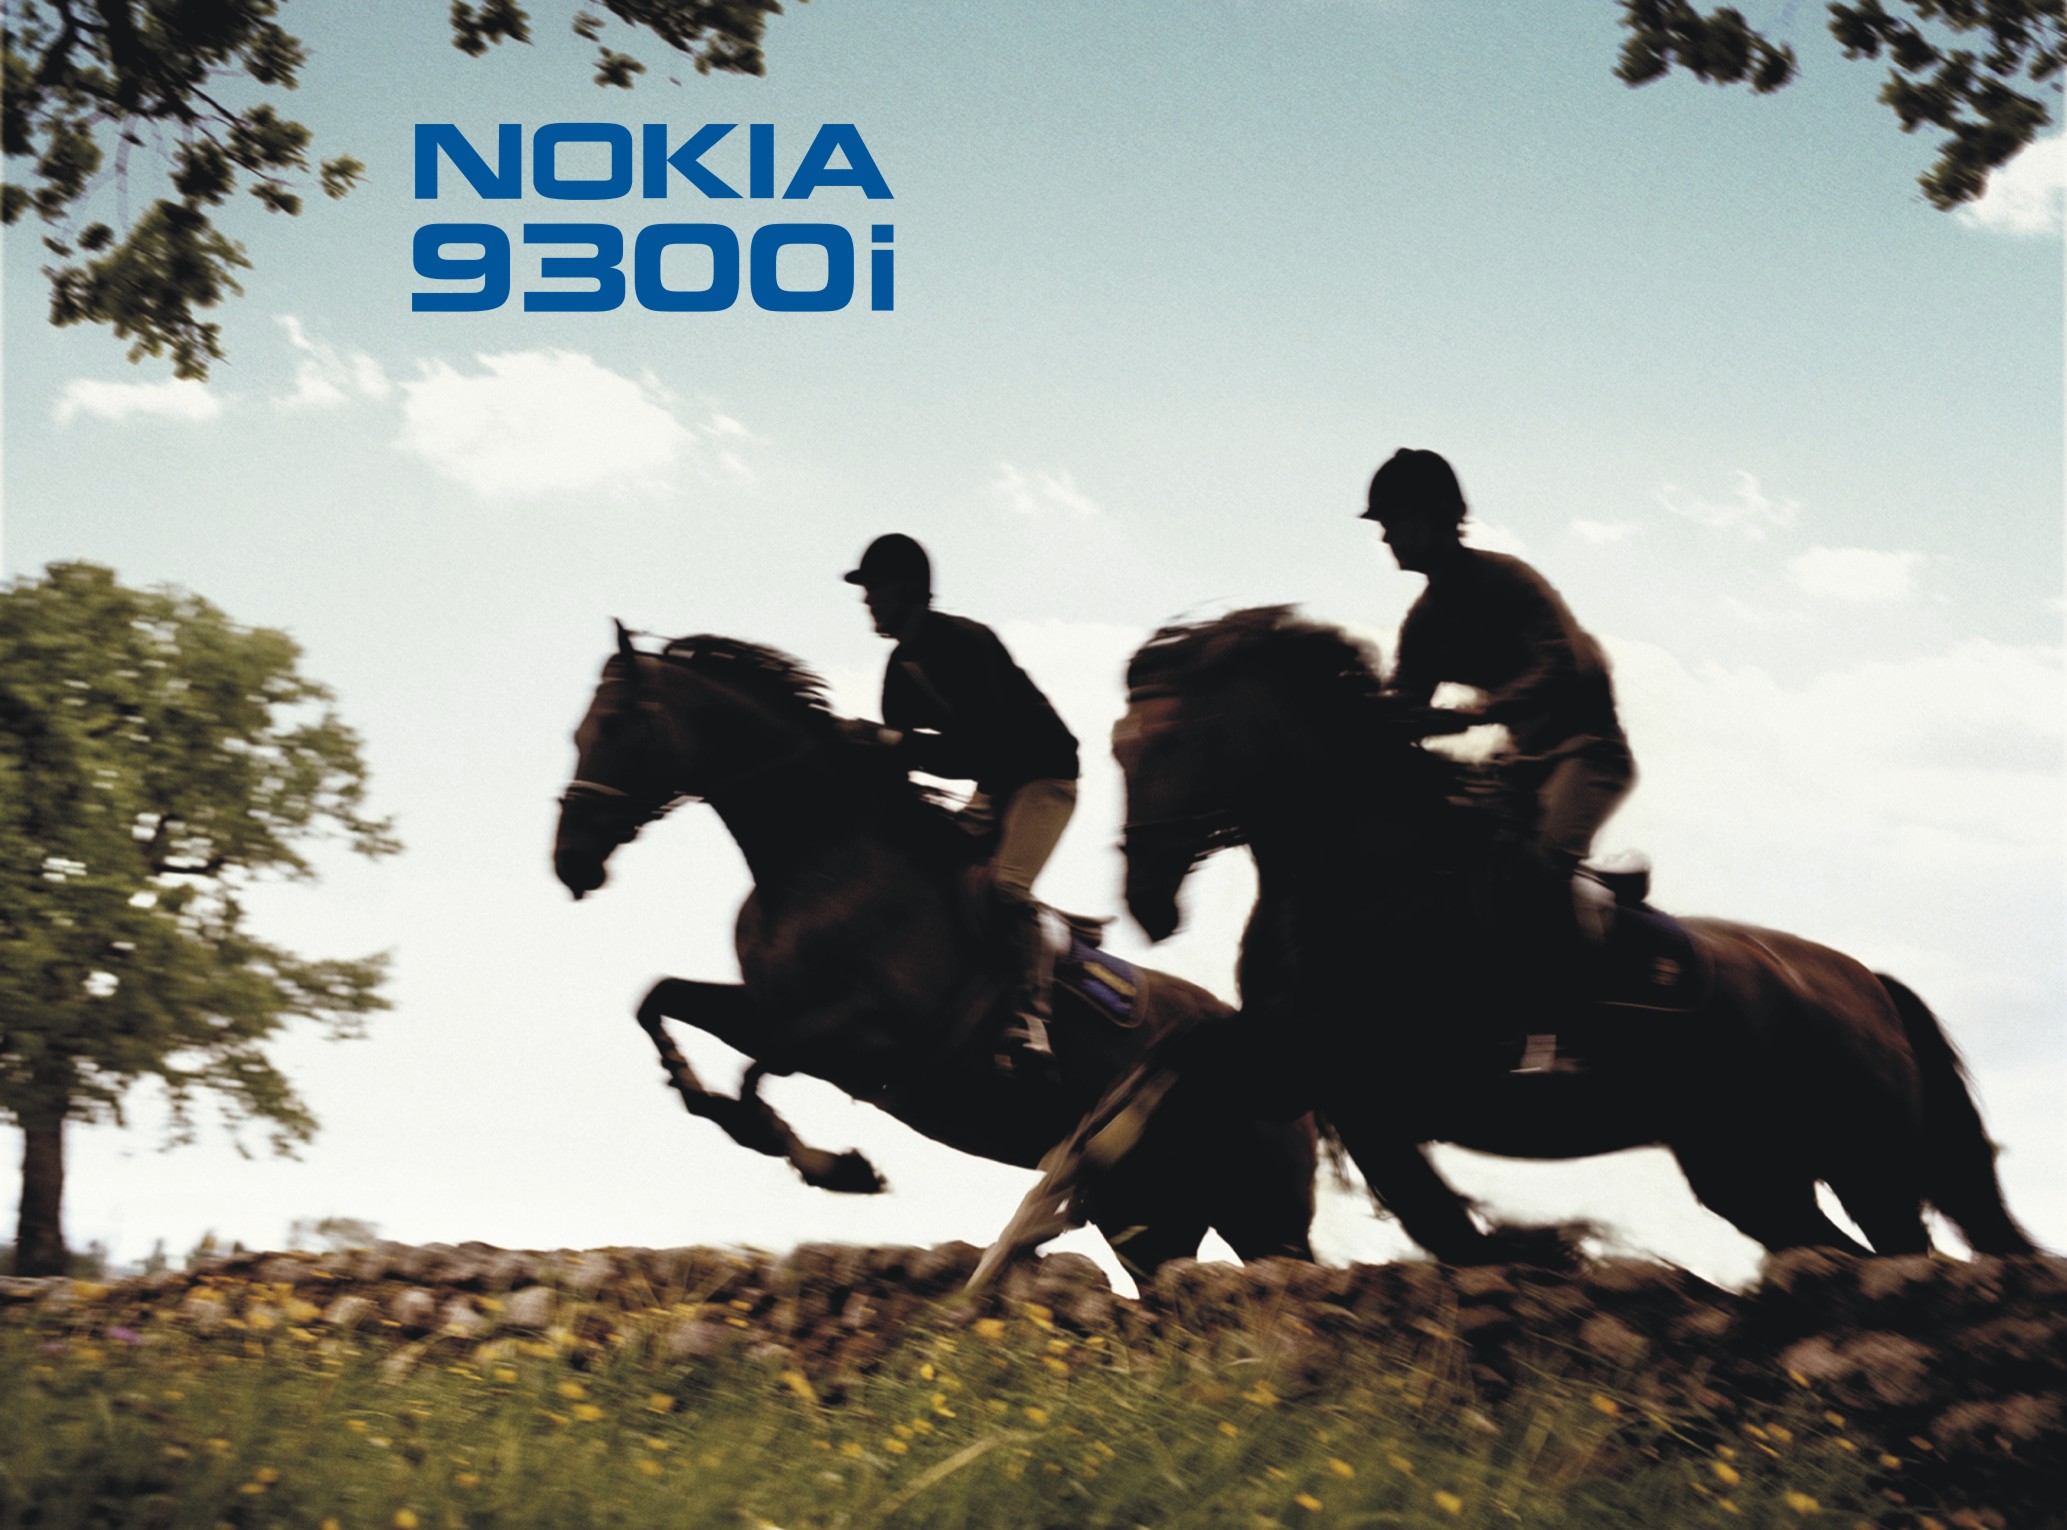 Nokia 9300i - felhasználói